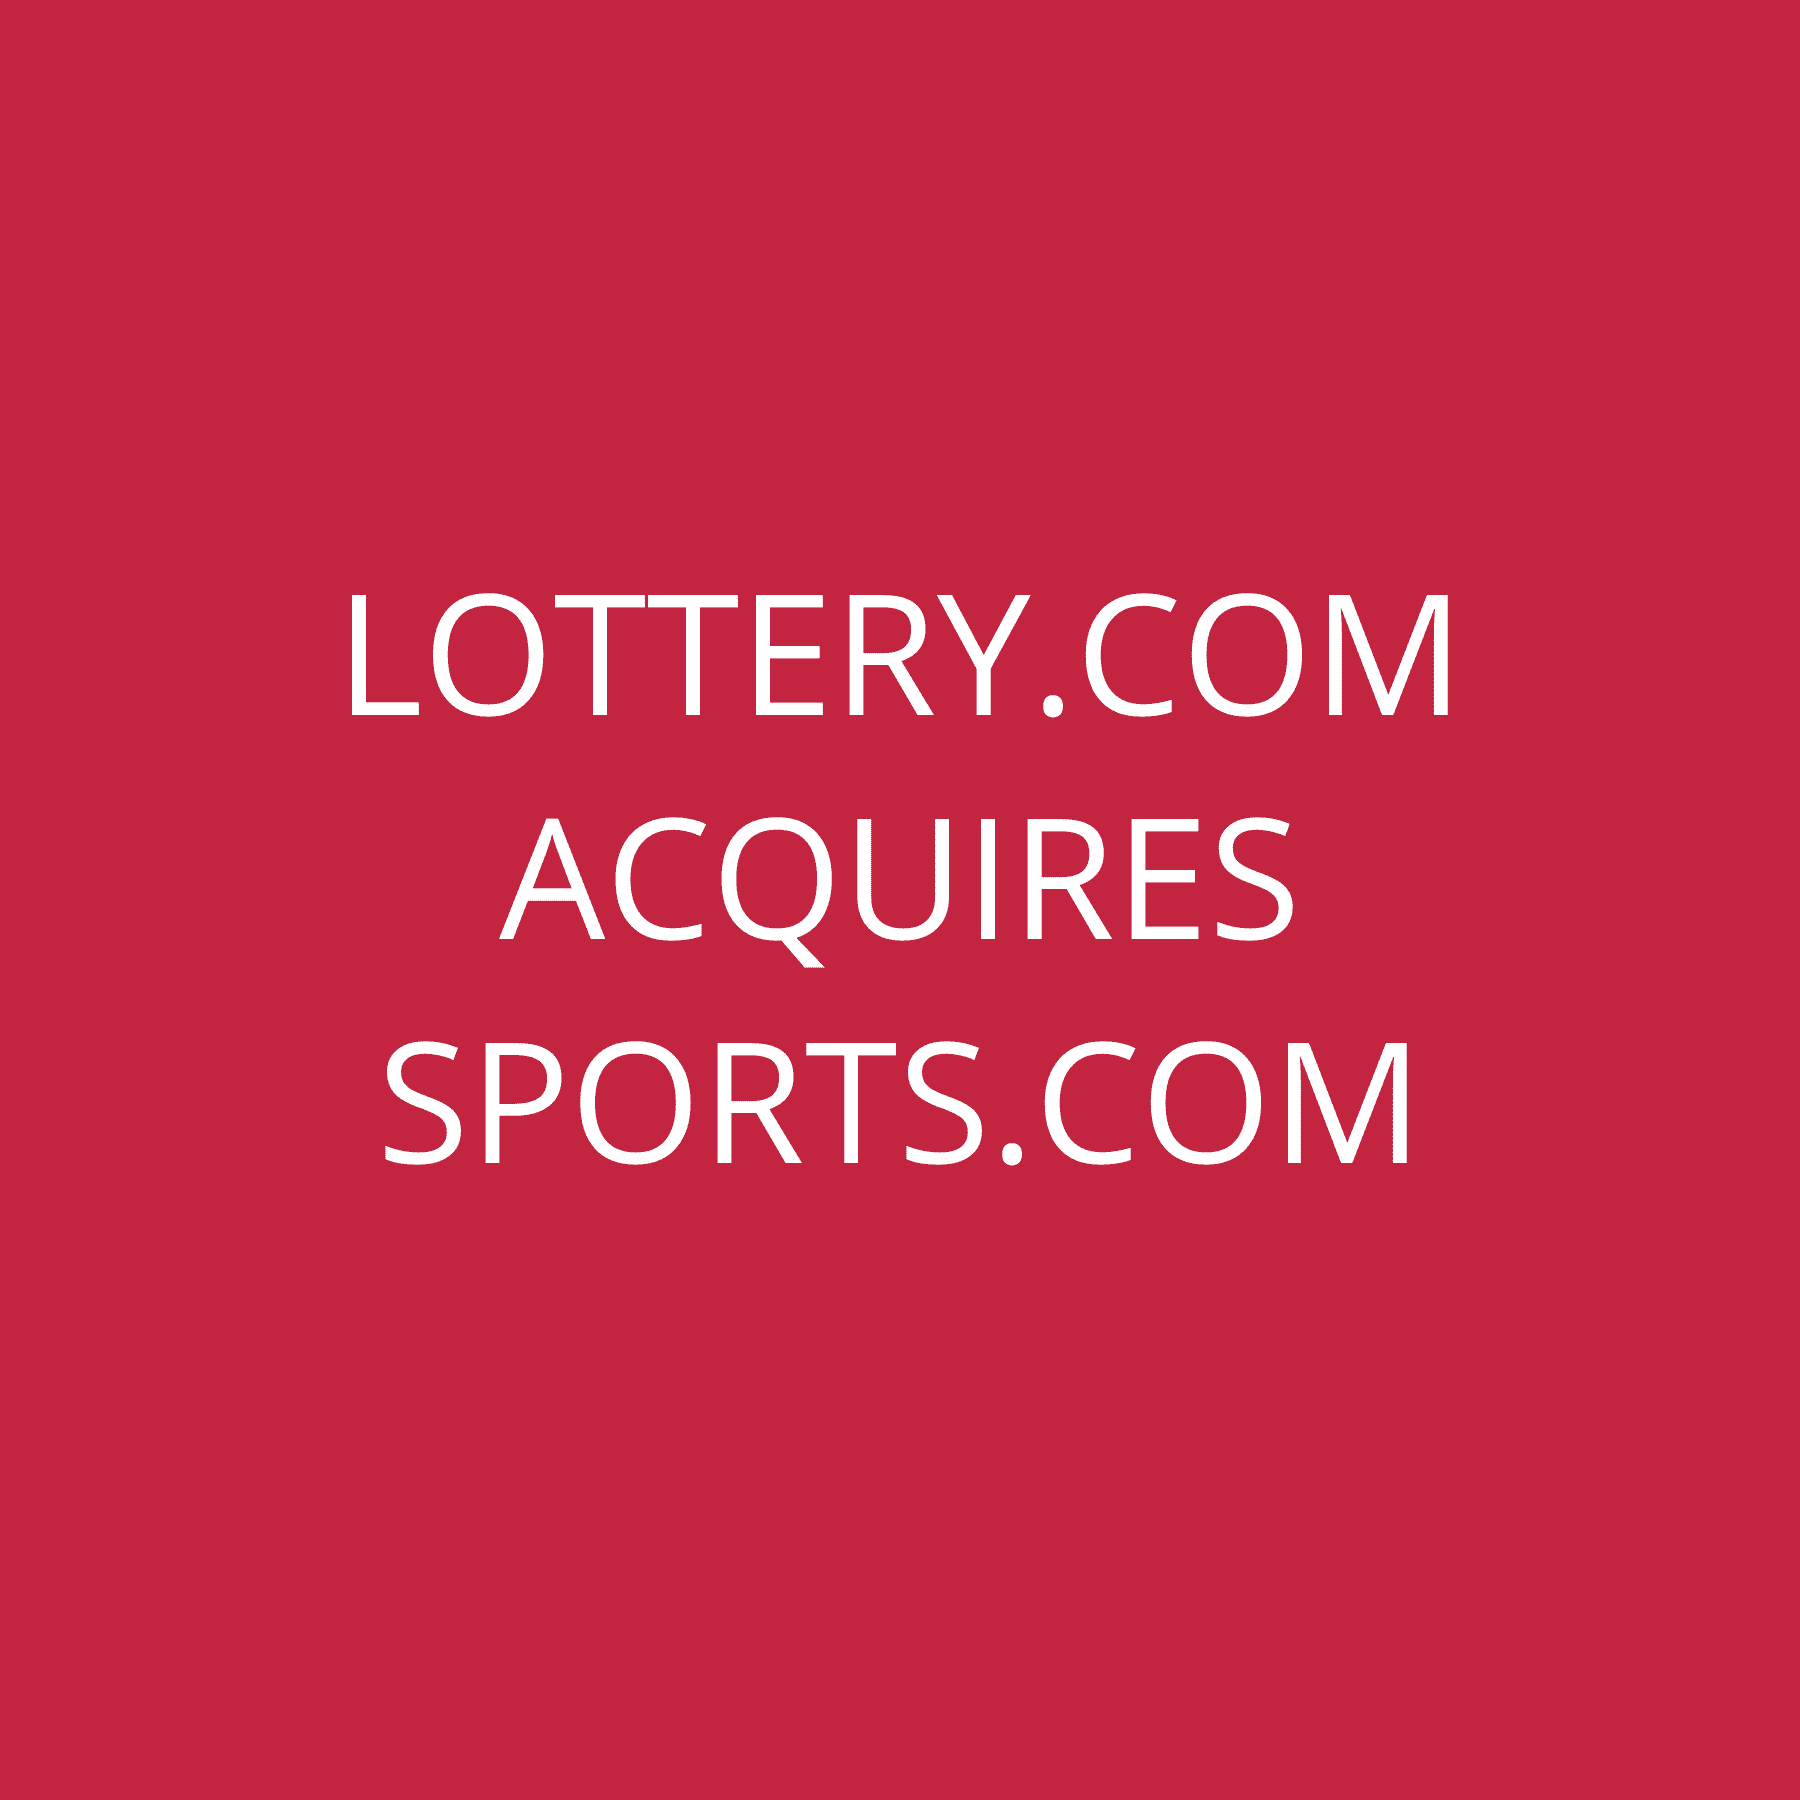 Lottery.com acquires Sports.com